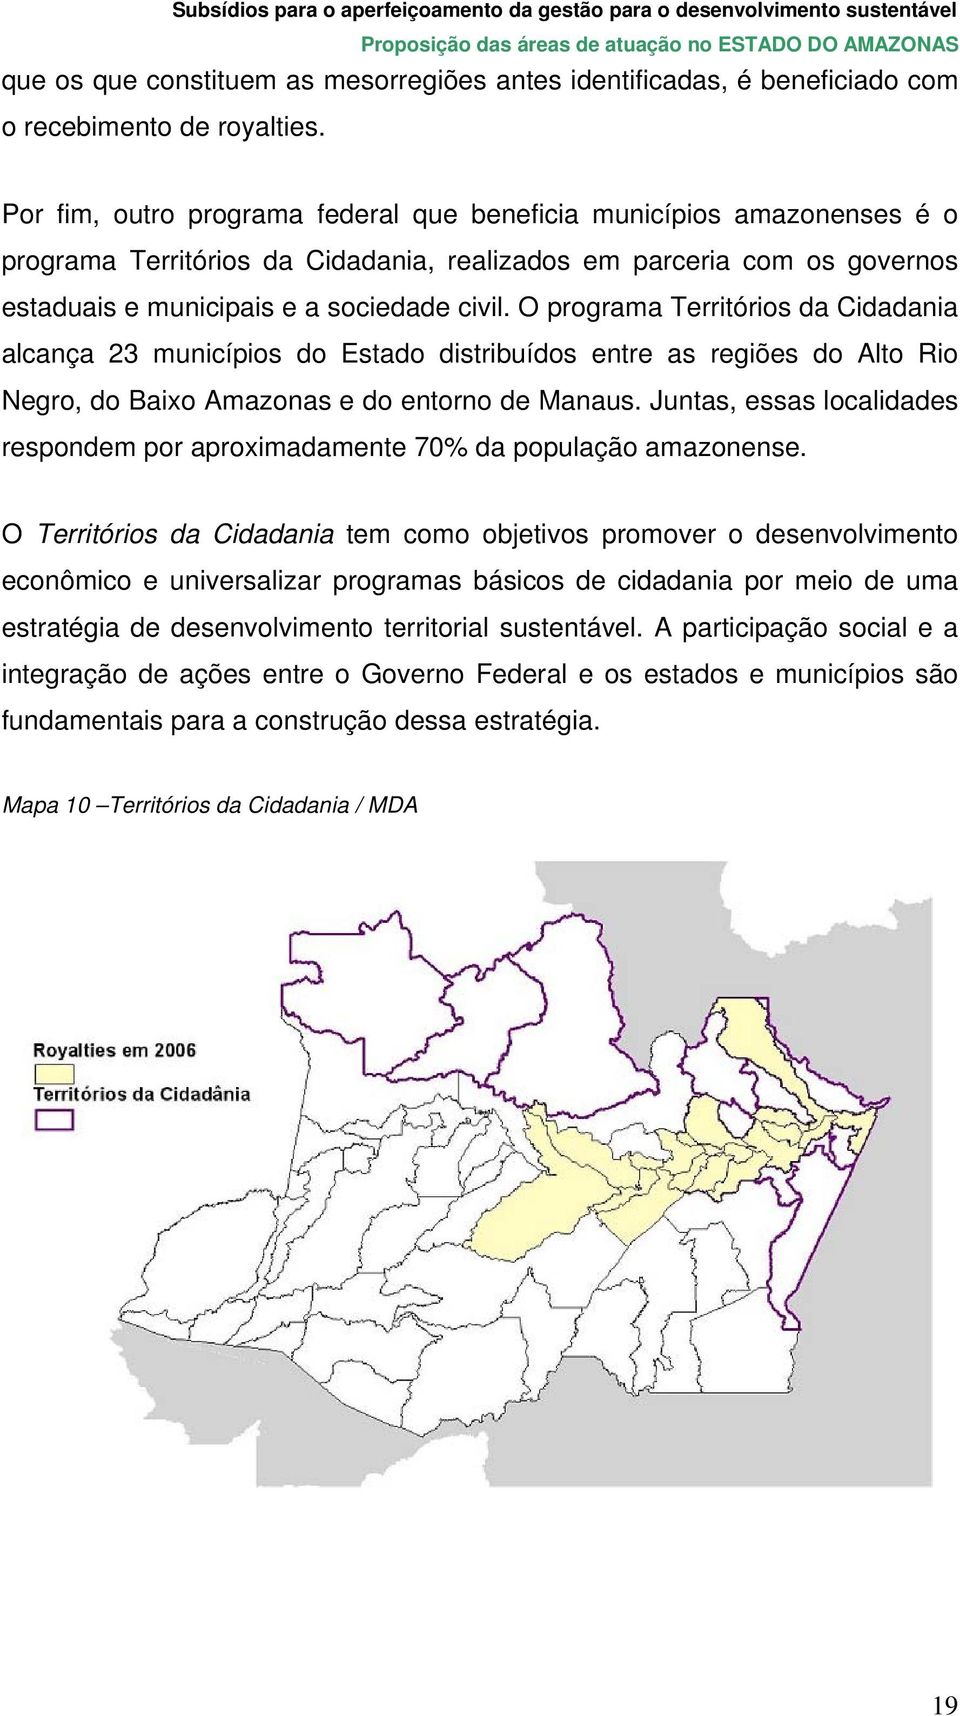 O programa Territórios da Cidadania alcança 23 municípios do Estado distribuídos entre as regiões do Alto Rio Negro, do Baixo Amazonas e do entorno de Manaus.